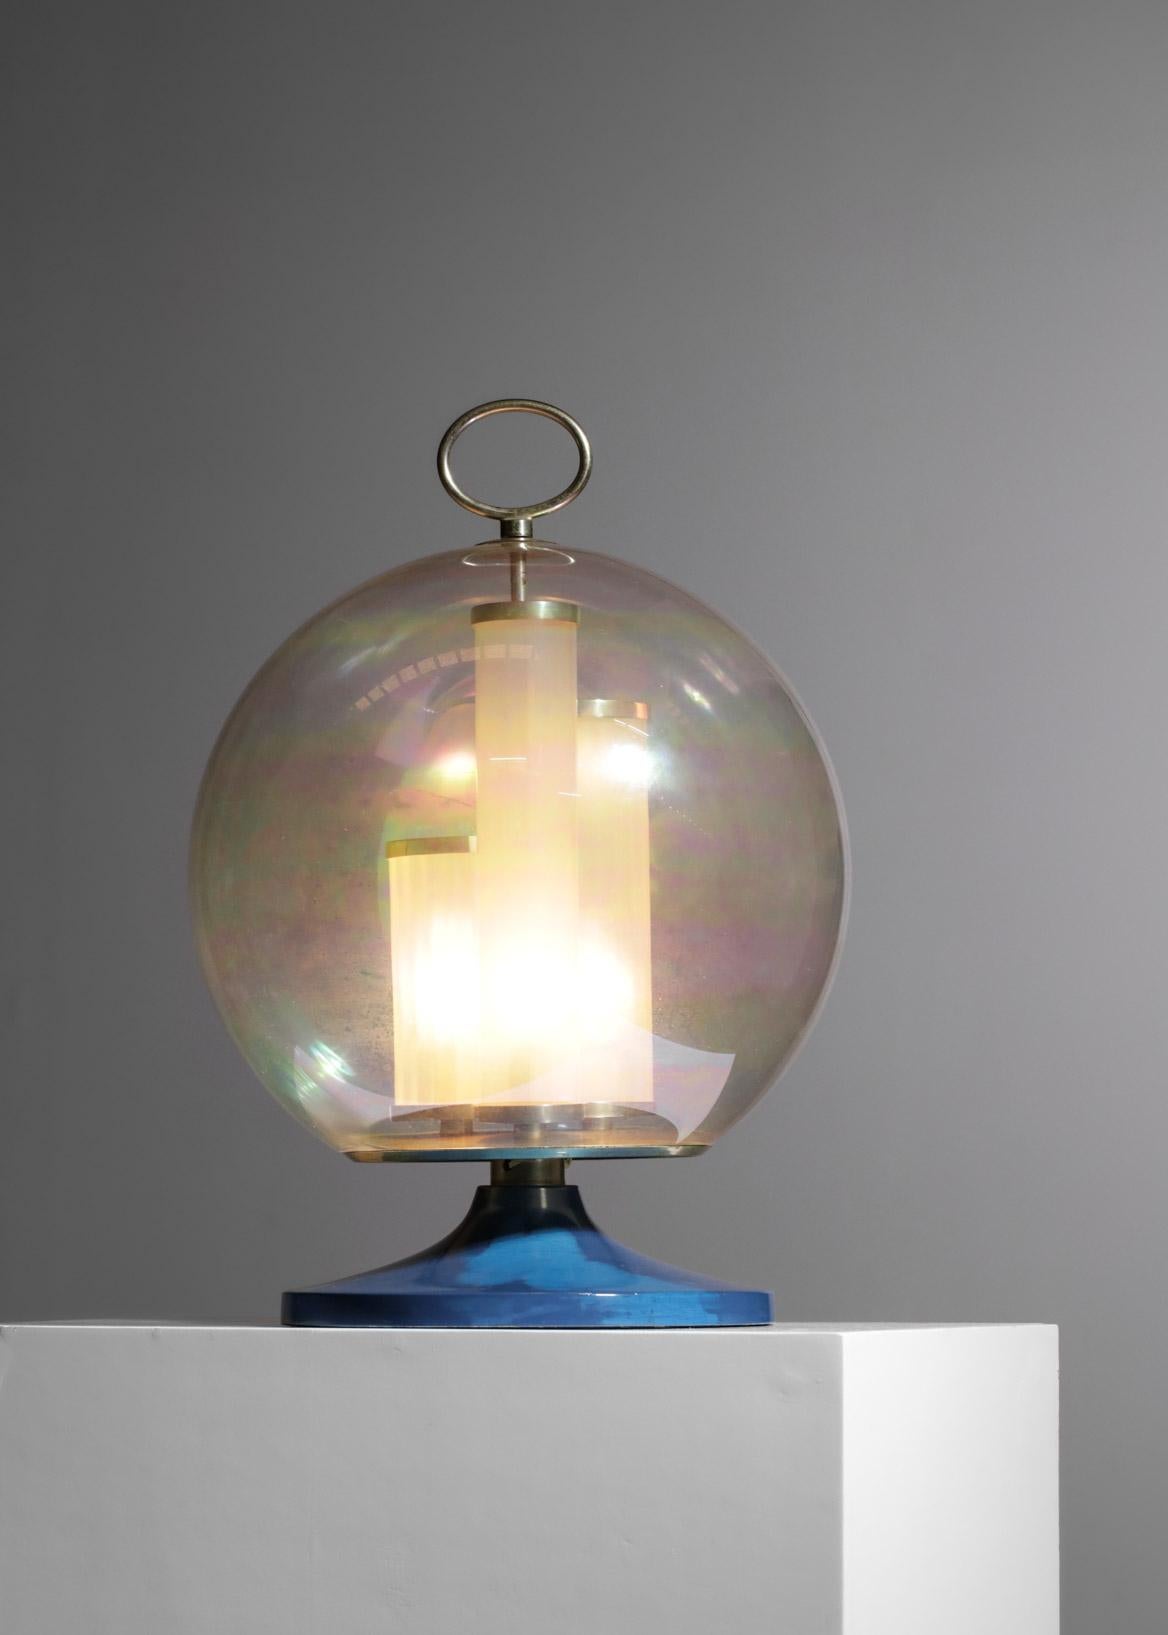 iridescent globe lamp